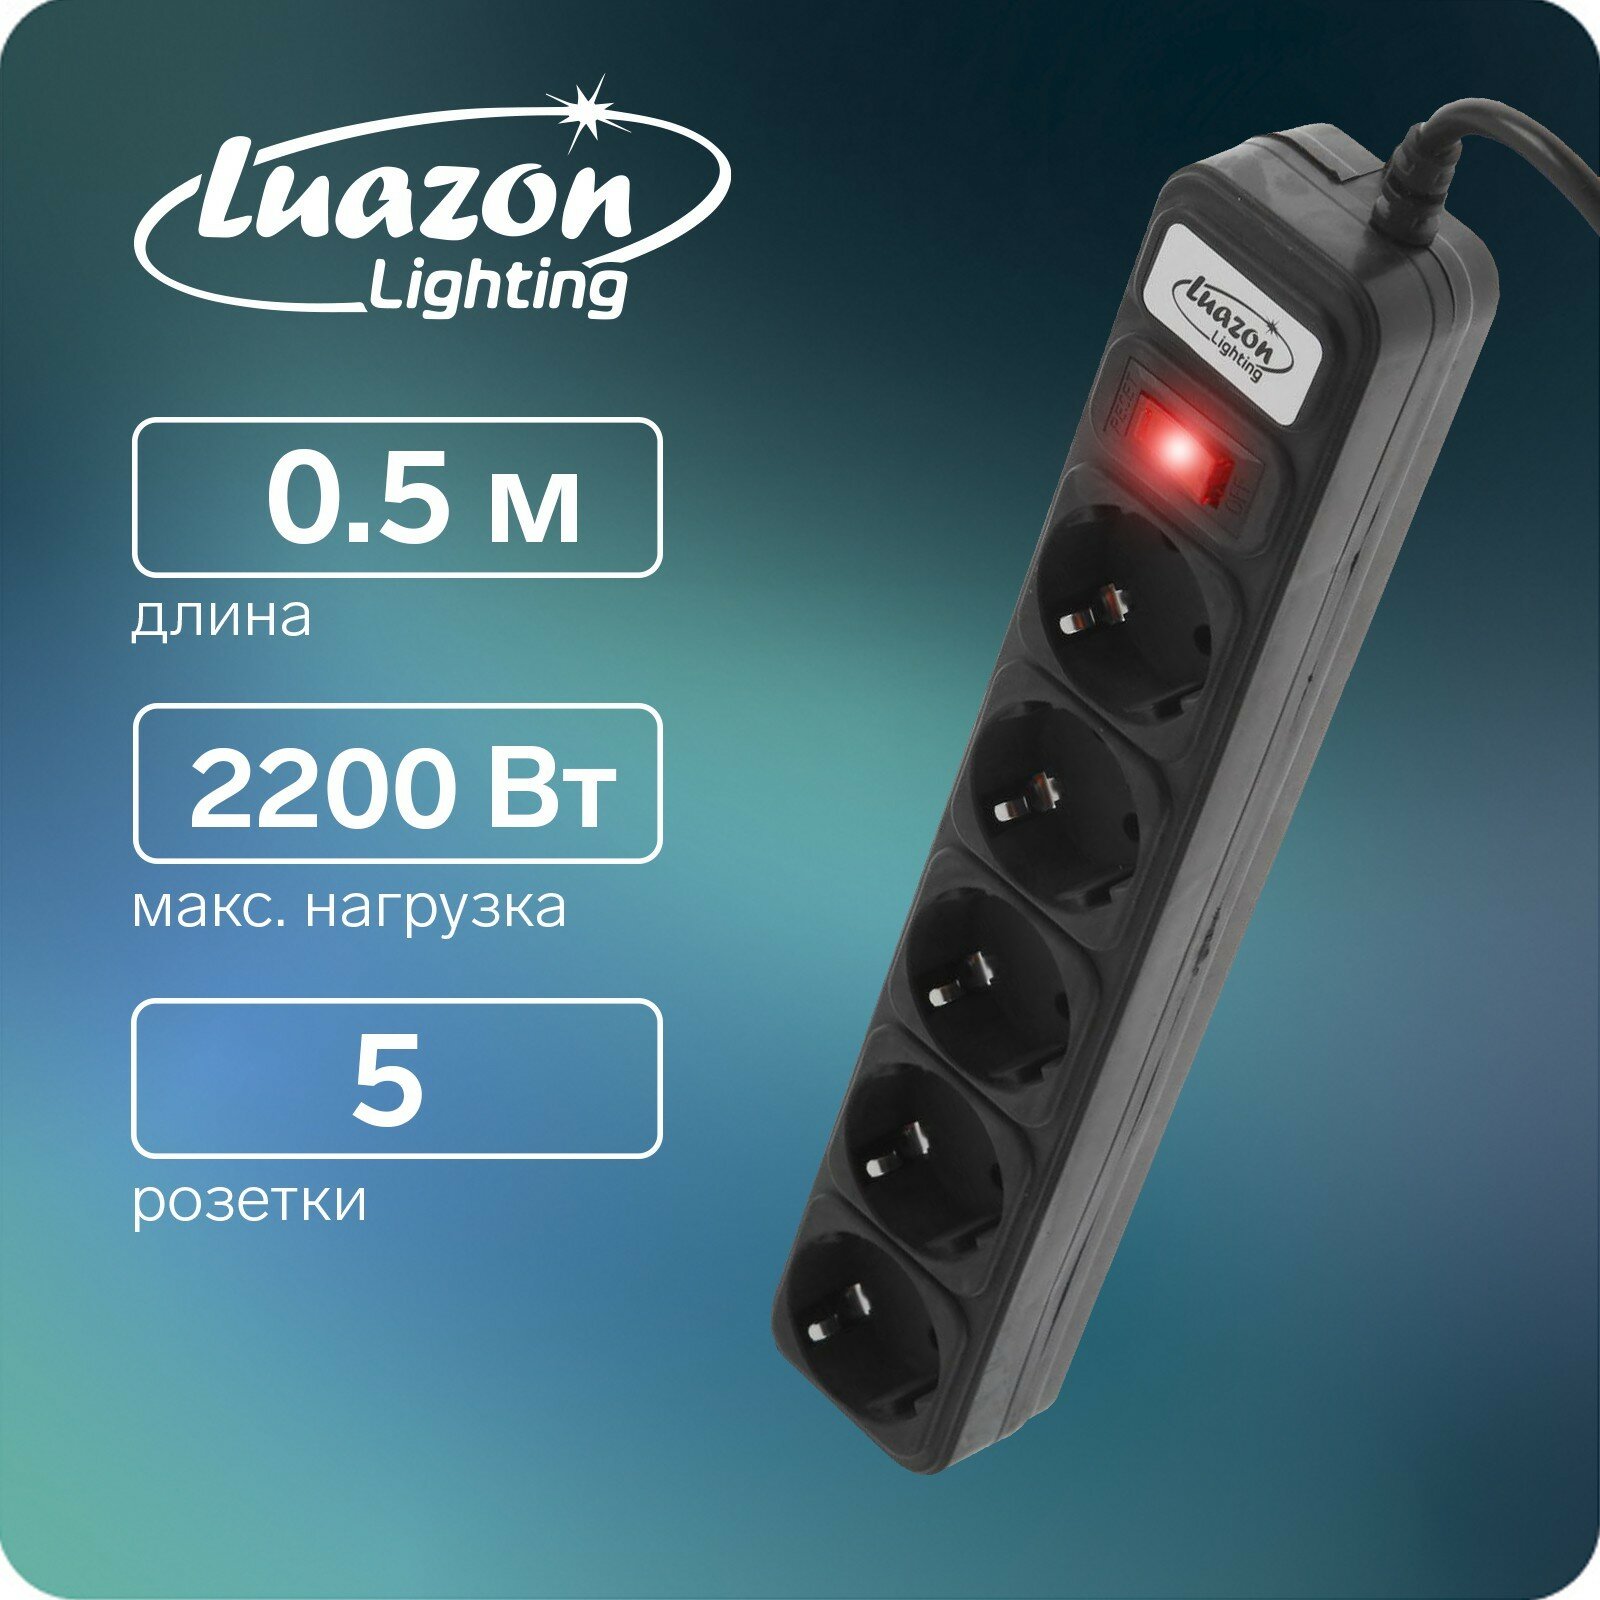 Сетевой фильтр Luazon Lighting, 5 розеток, 0.5 м, 2200 Вт, 3 х 0.75 мм2, 10 A, 220 В, черный (1шт.)